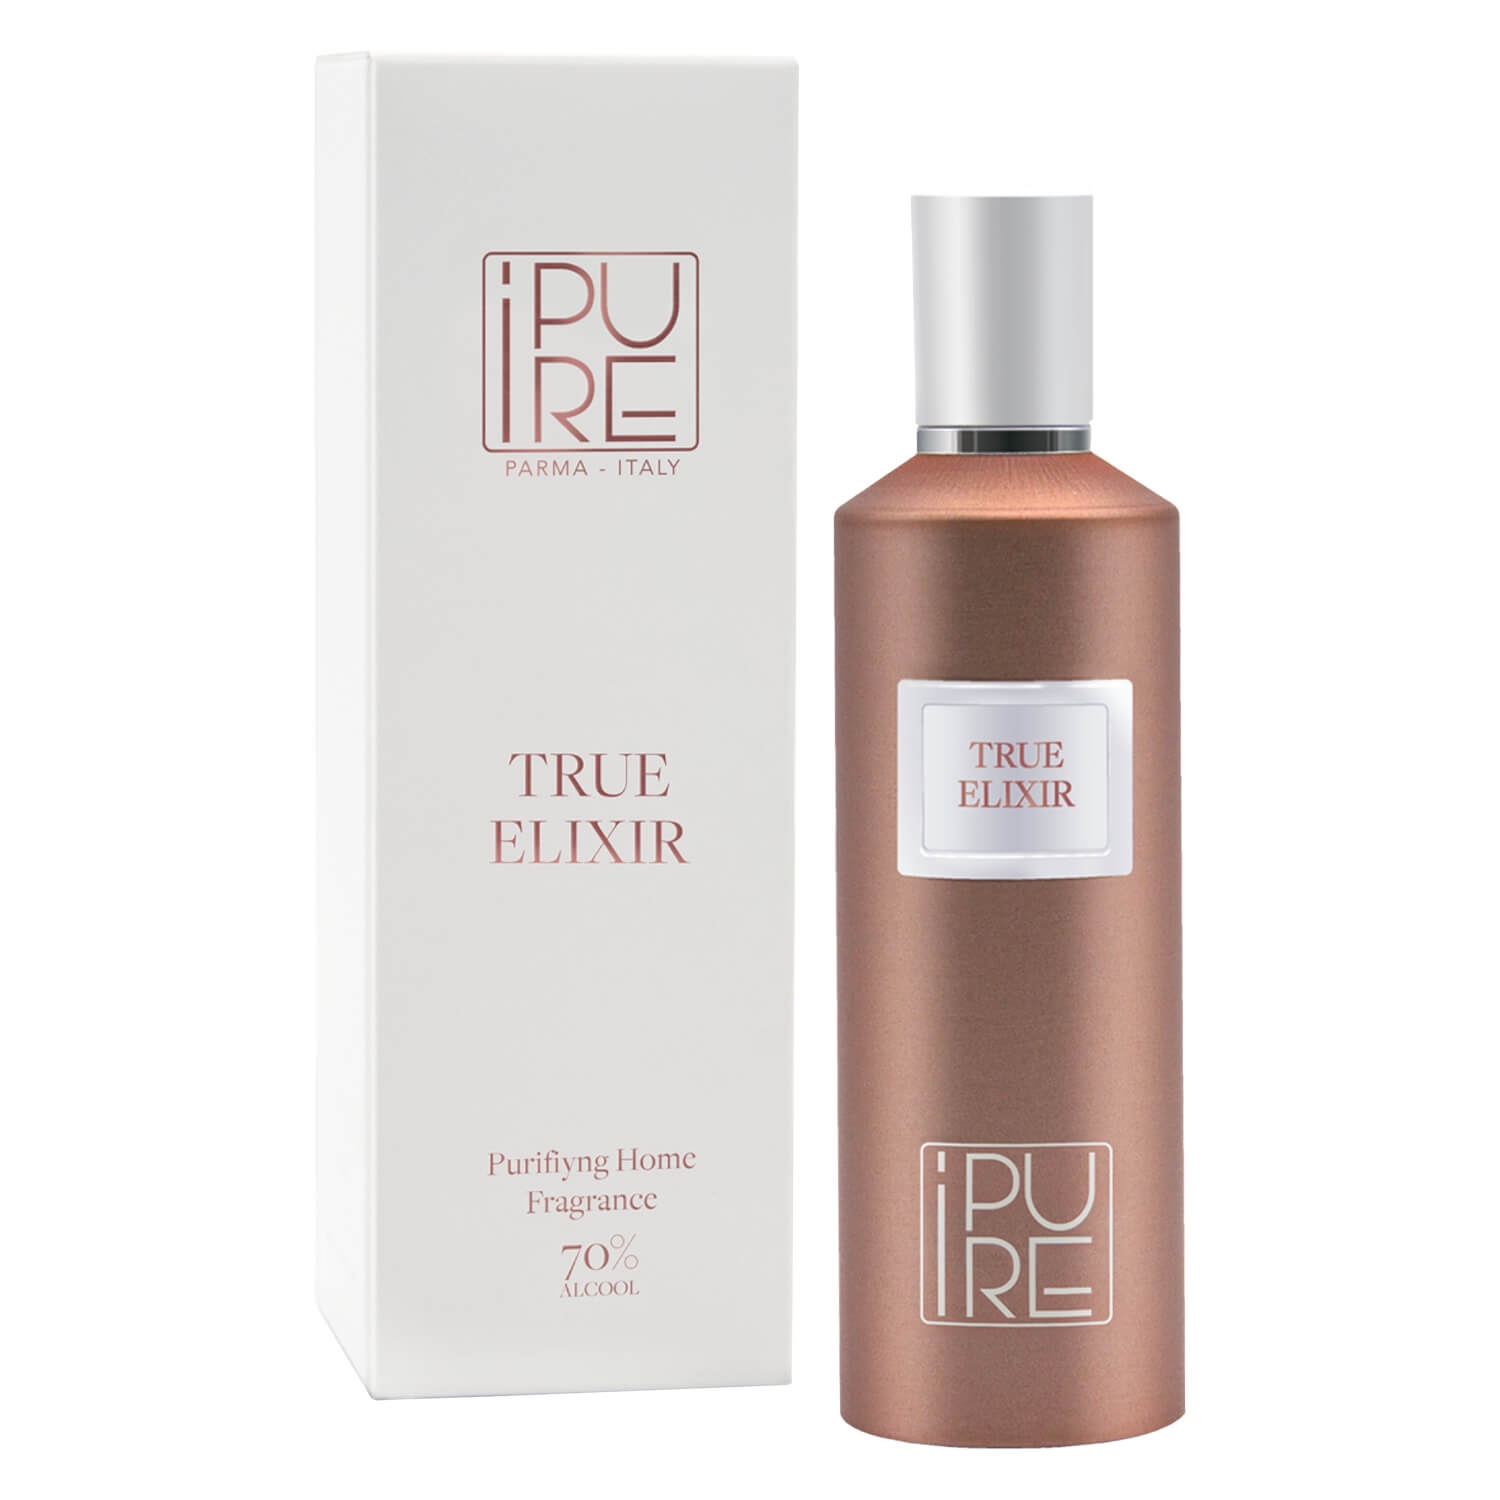 Produktbild von iPURE - Purifying Home Fragrance Spray TRUE ELIXIR